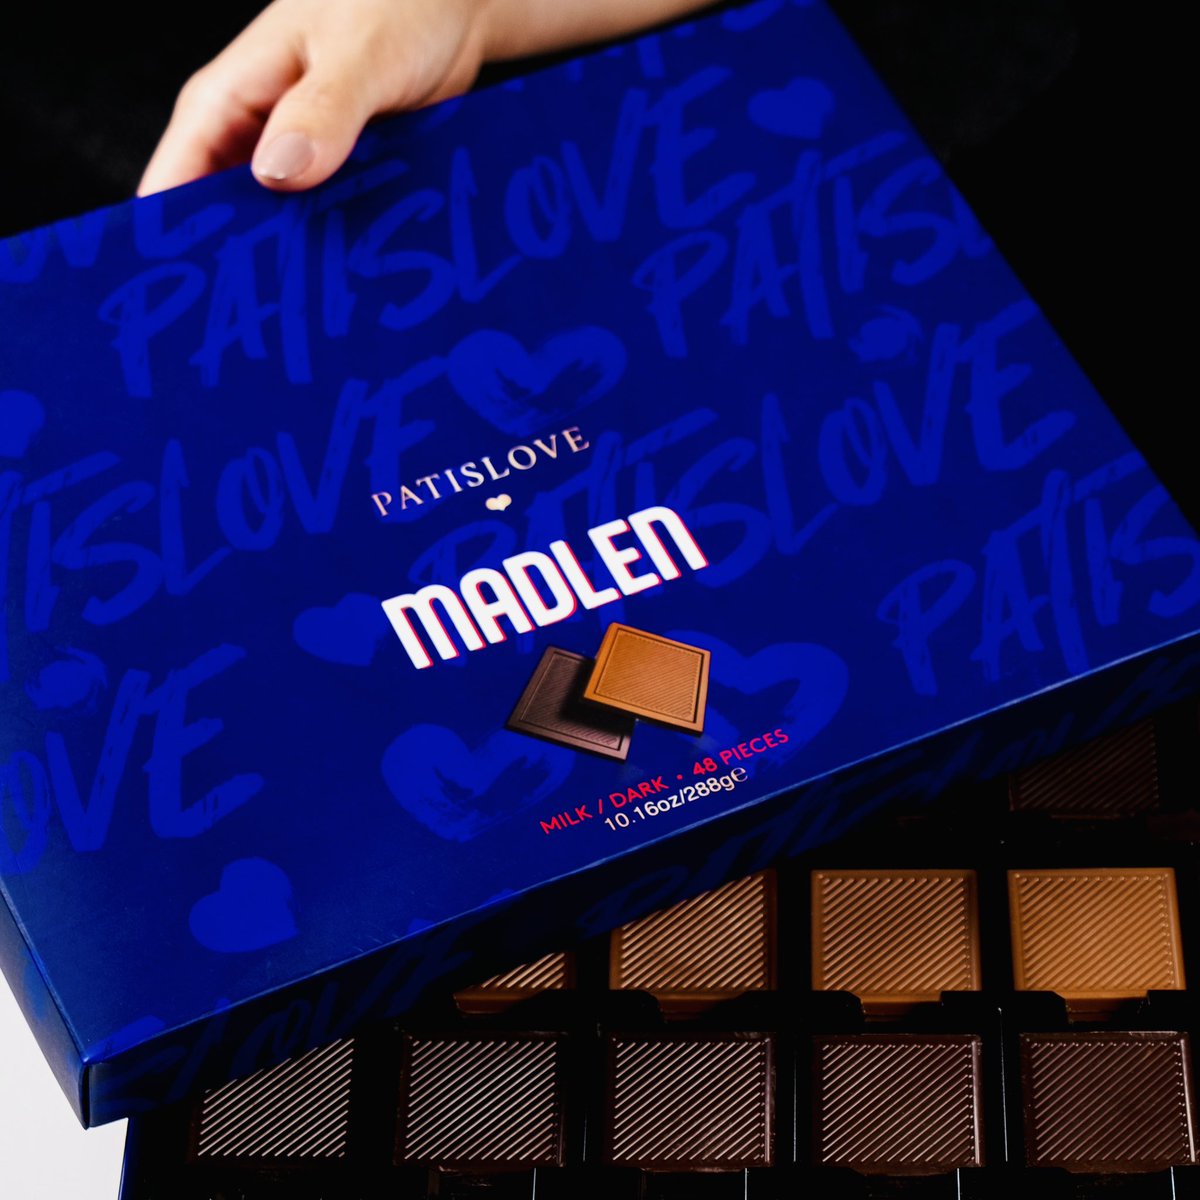 Patislove Madlen Çikolata Bayram koleksiyonumuzun aşk dolu lezzeti sütlü ve bitter çikolatalı incecik formlu Patislove Madlen, Migros marketlerde seni bekliyor.🤎 🛒 Migros #patiswiss #madlen #bayram #çikolata #migros